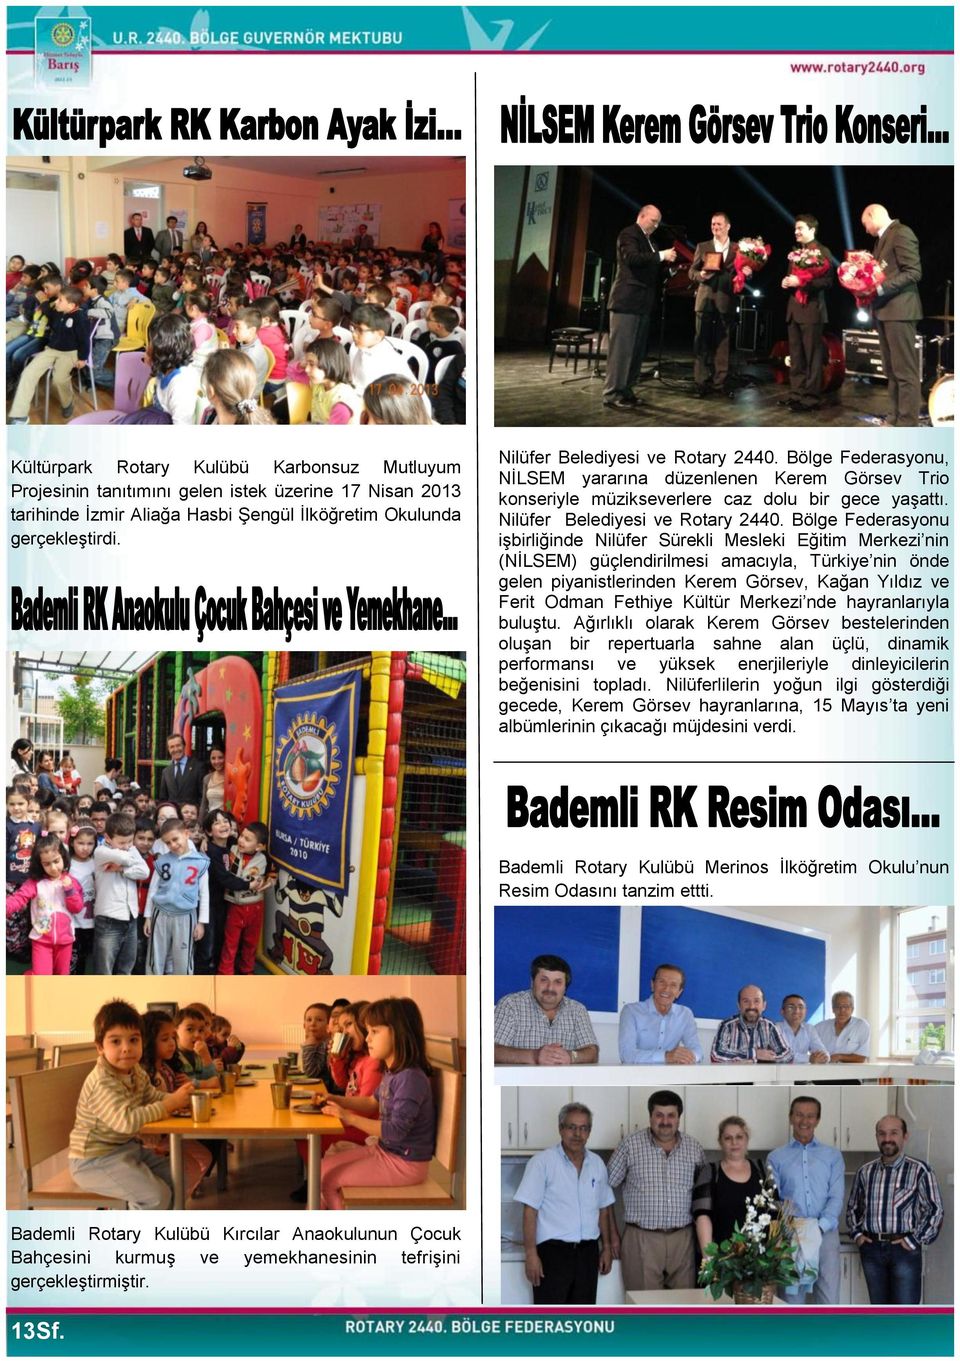 Bölge Federasyonu işbirliğinde Nilüfer Sürekli Mesleki Eğitim Merkezi nin (NİLSEM) güçlendirilmesi amacıyla, Türkiye nin önde gelen piyanistlerinden Kerem Görsev, Kağan Yıldız ve Ferit Odman Fethiye